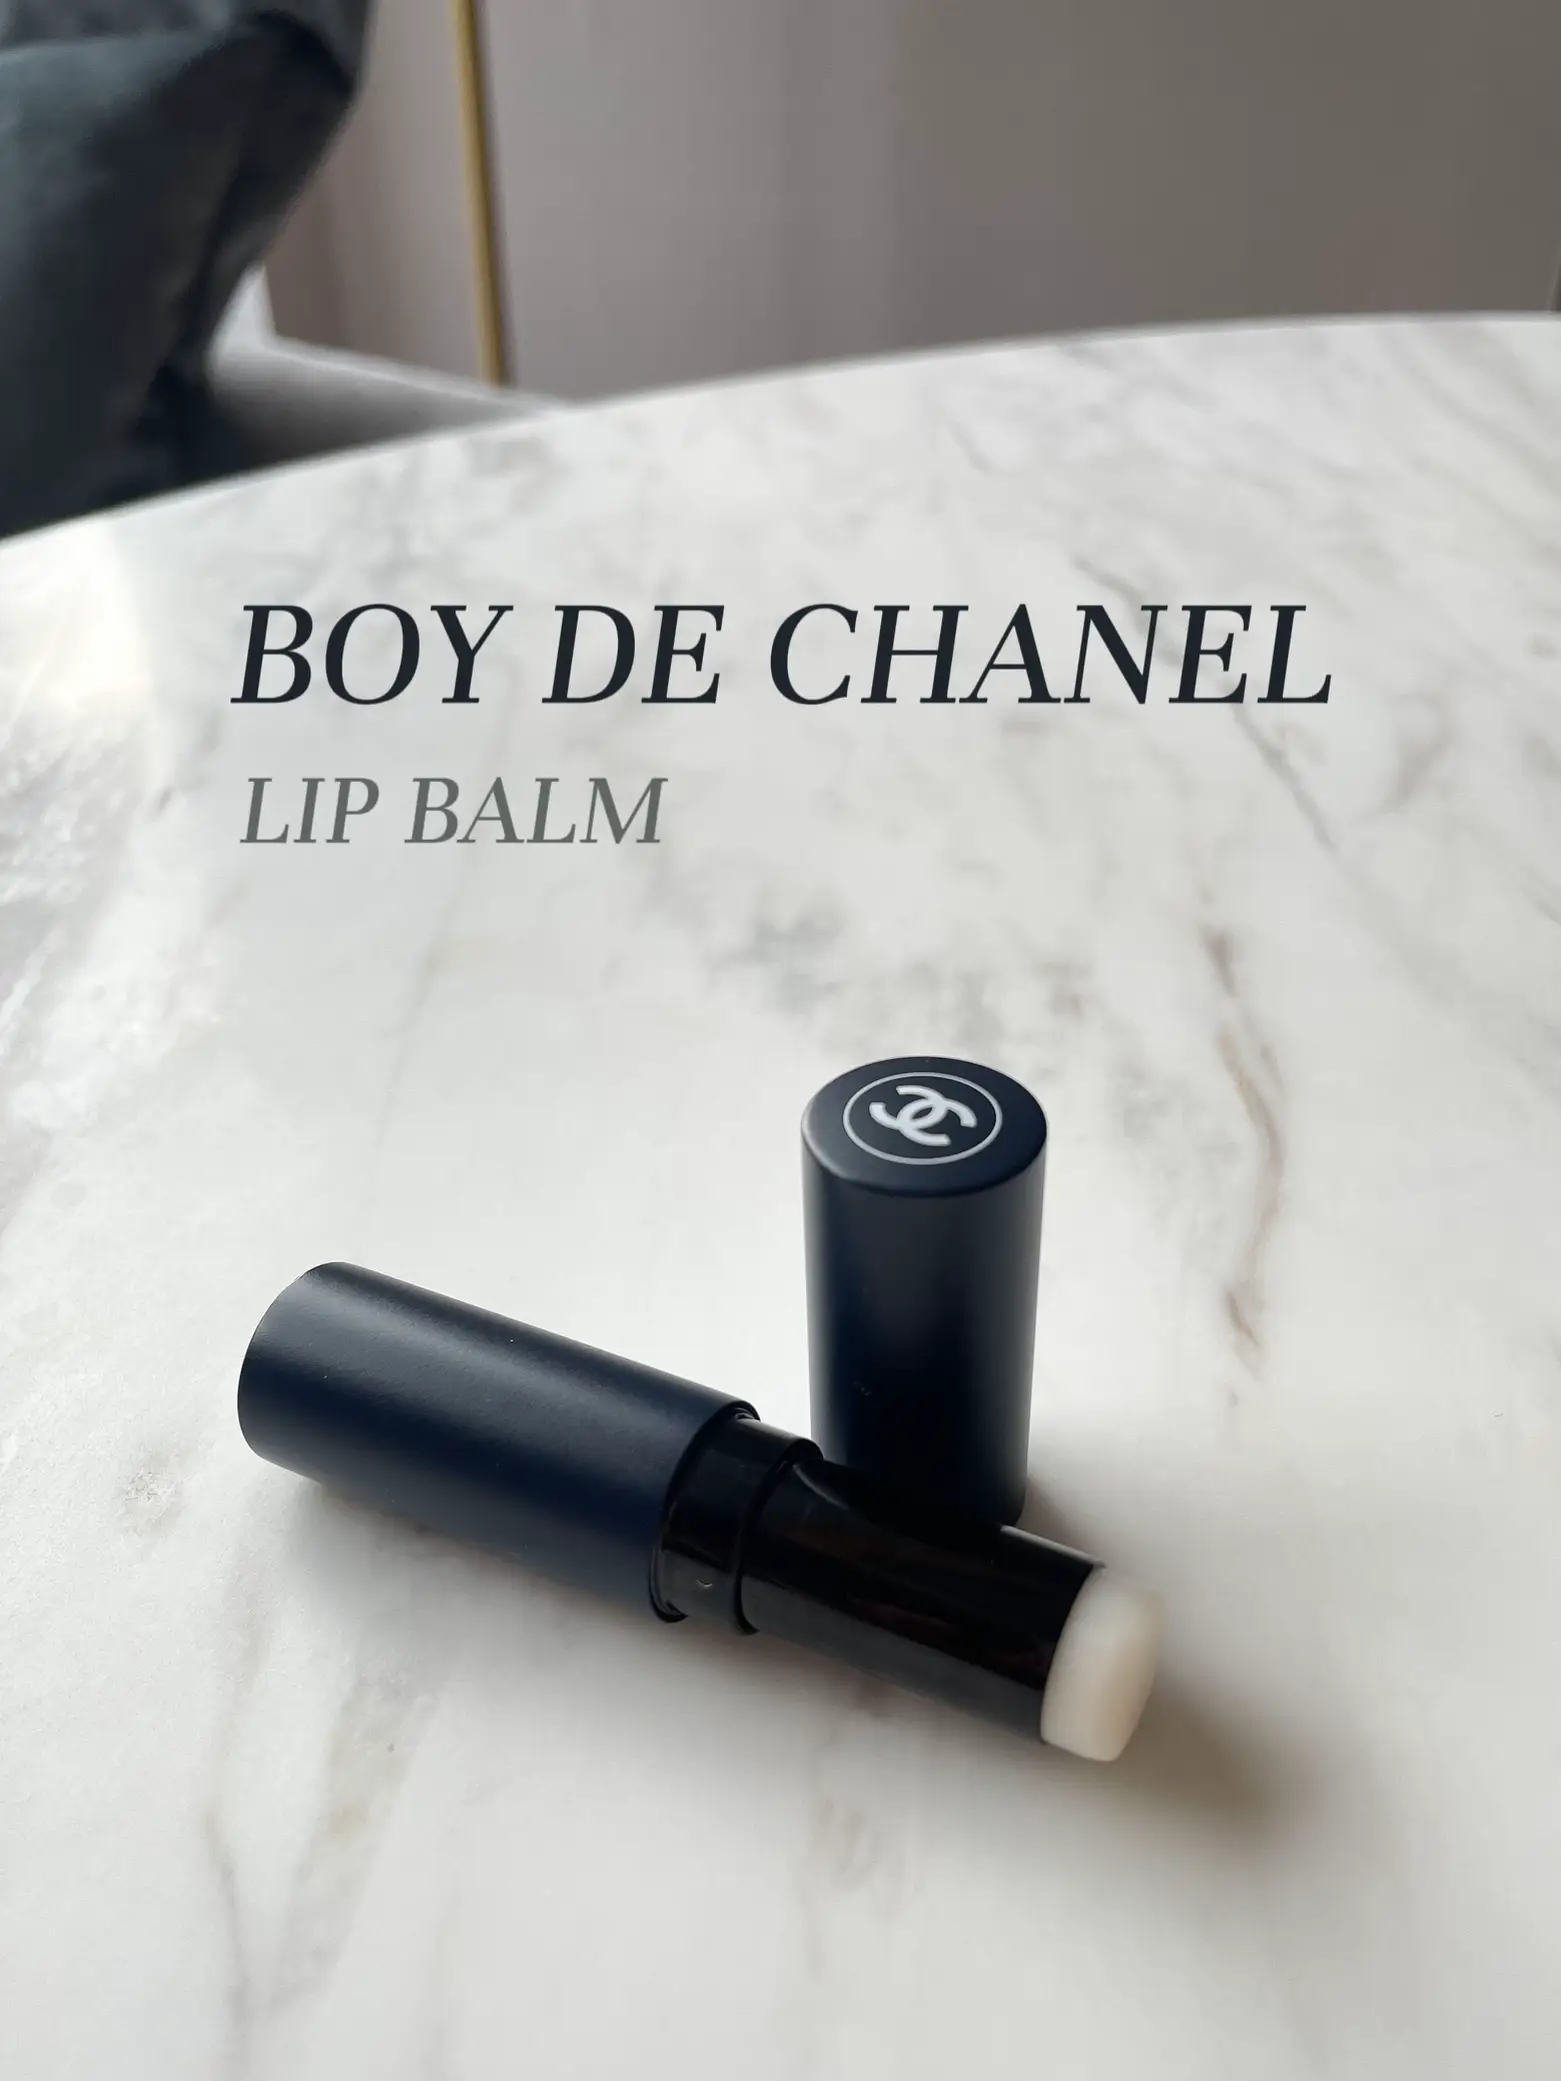 BOY DE CHANEL LIP BALM Matte Lip Balm 🖤, Gallery posted by Bam 💖🌈